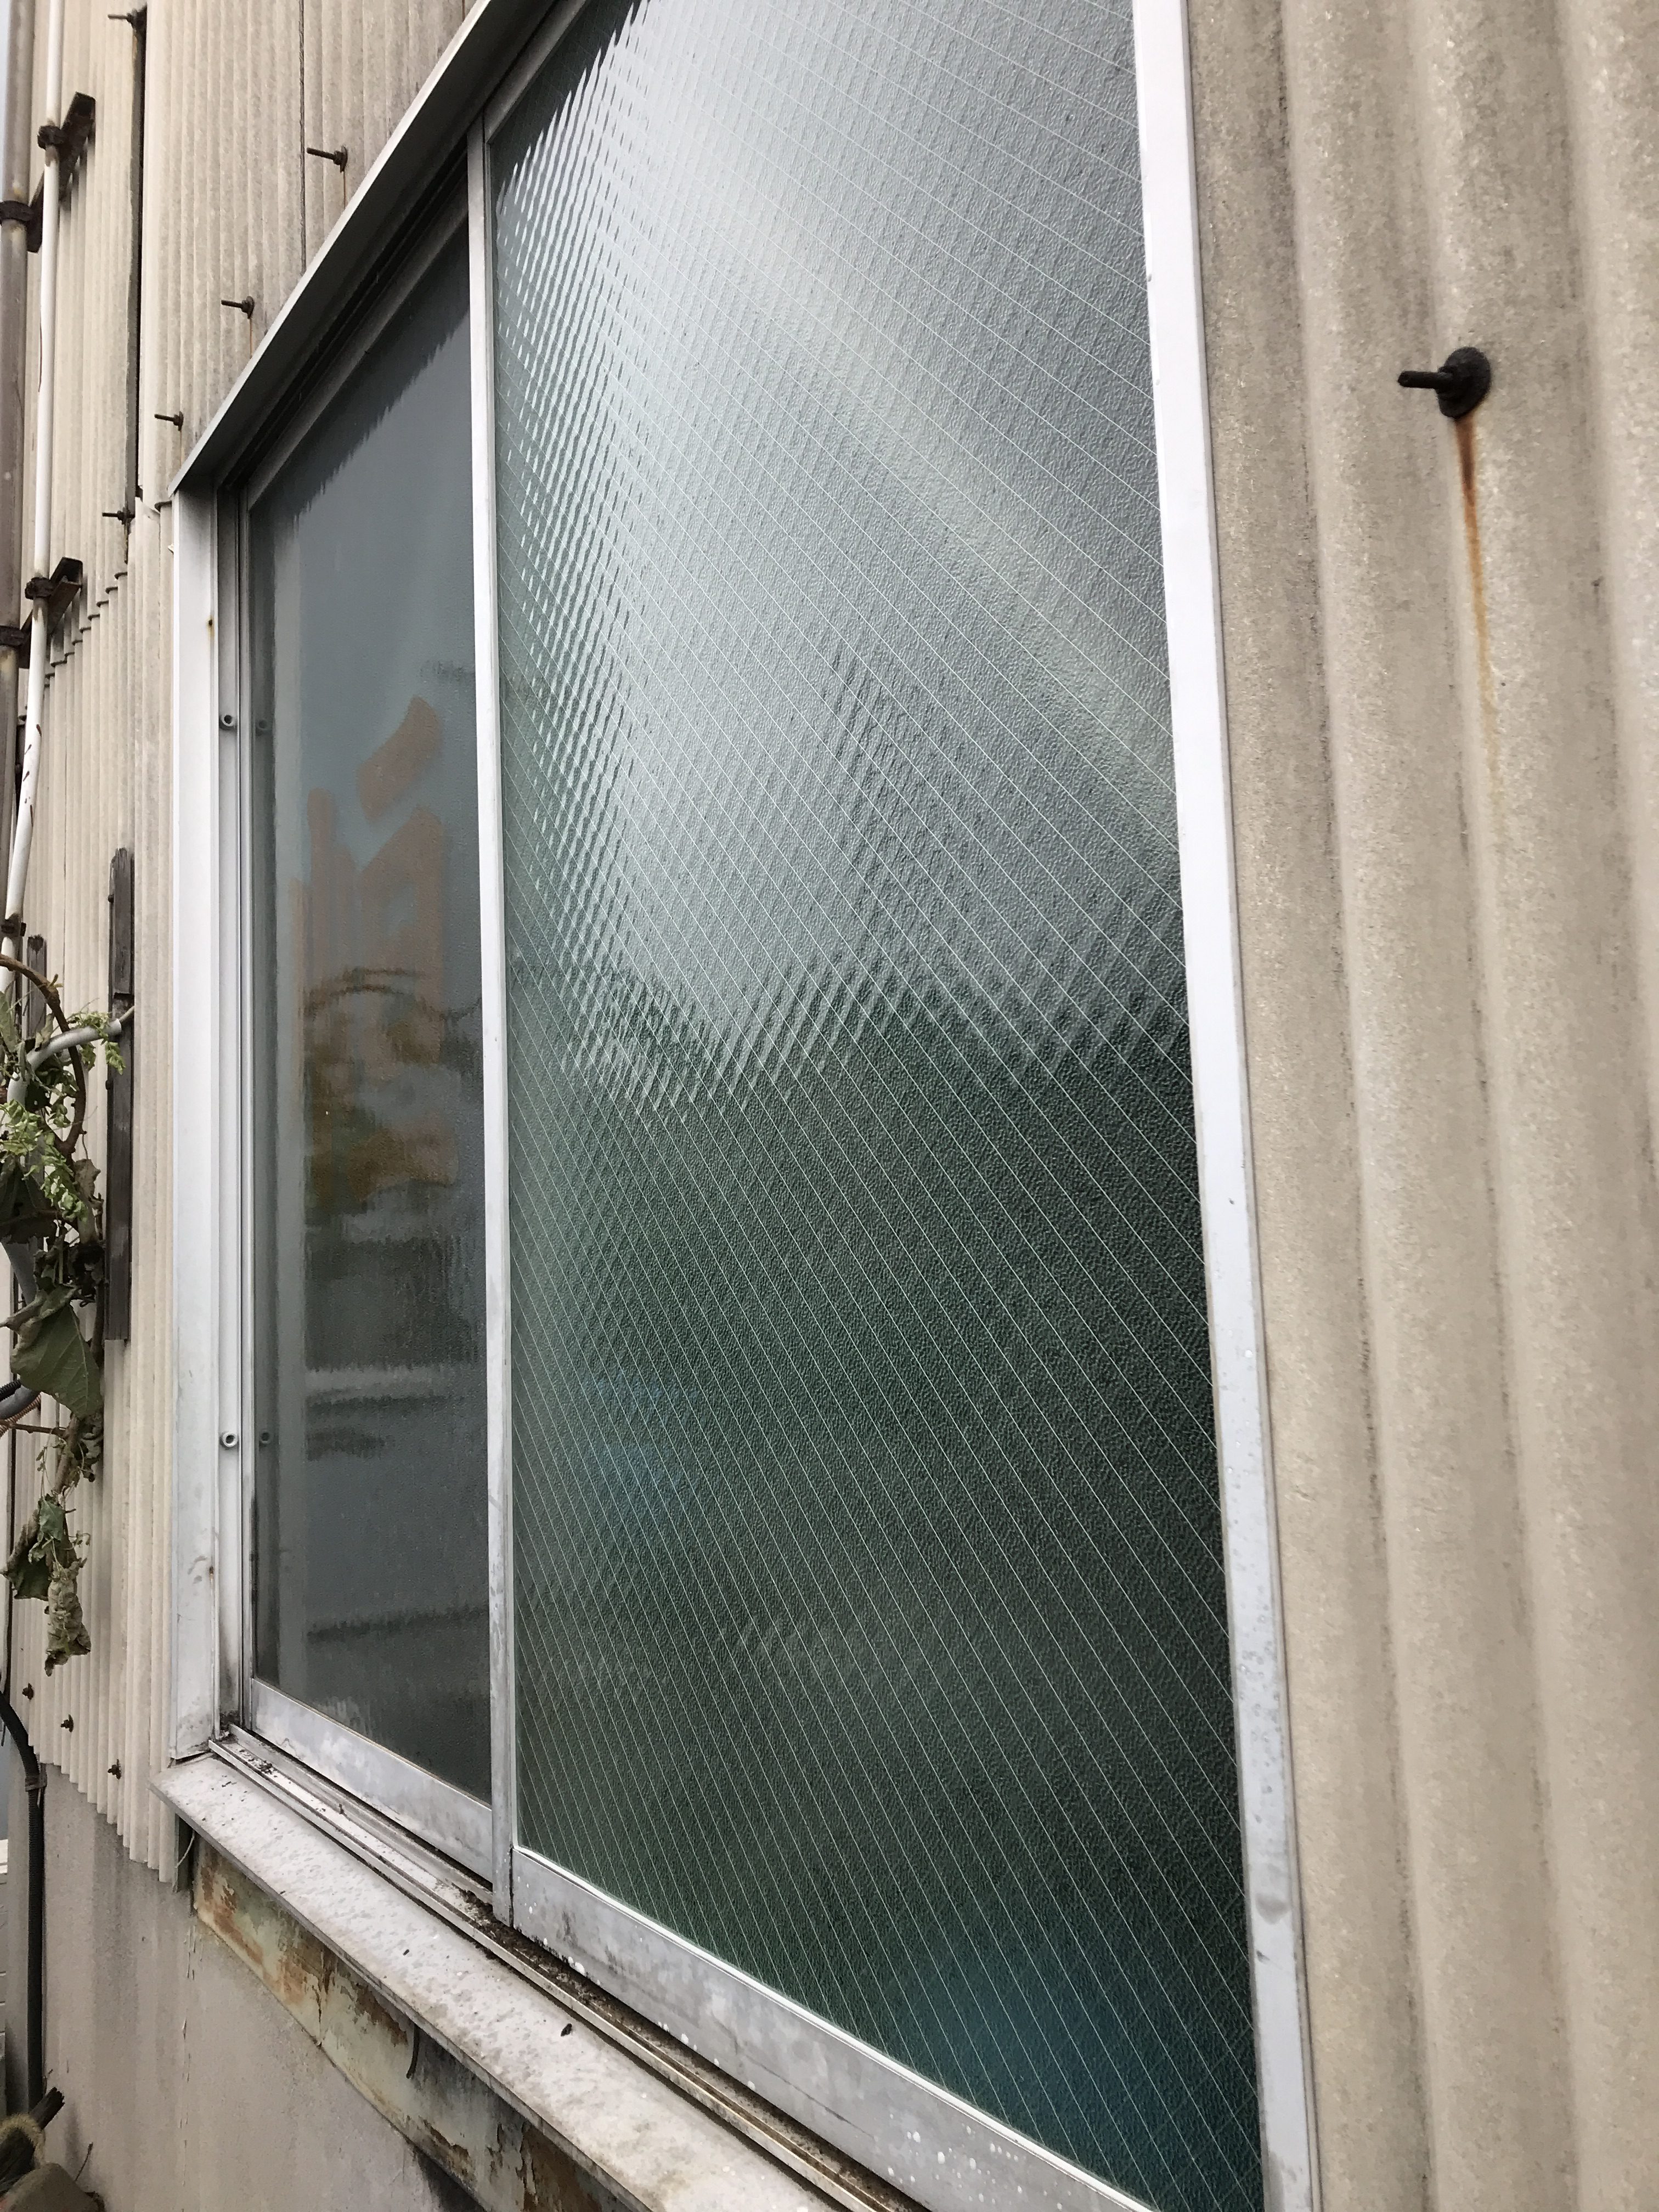 工場の窓ガラス交換。 名古屋のガラス交換・修理。取り付け グラスプラン「大脇硝子店」